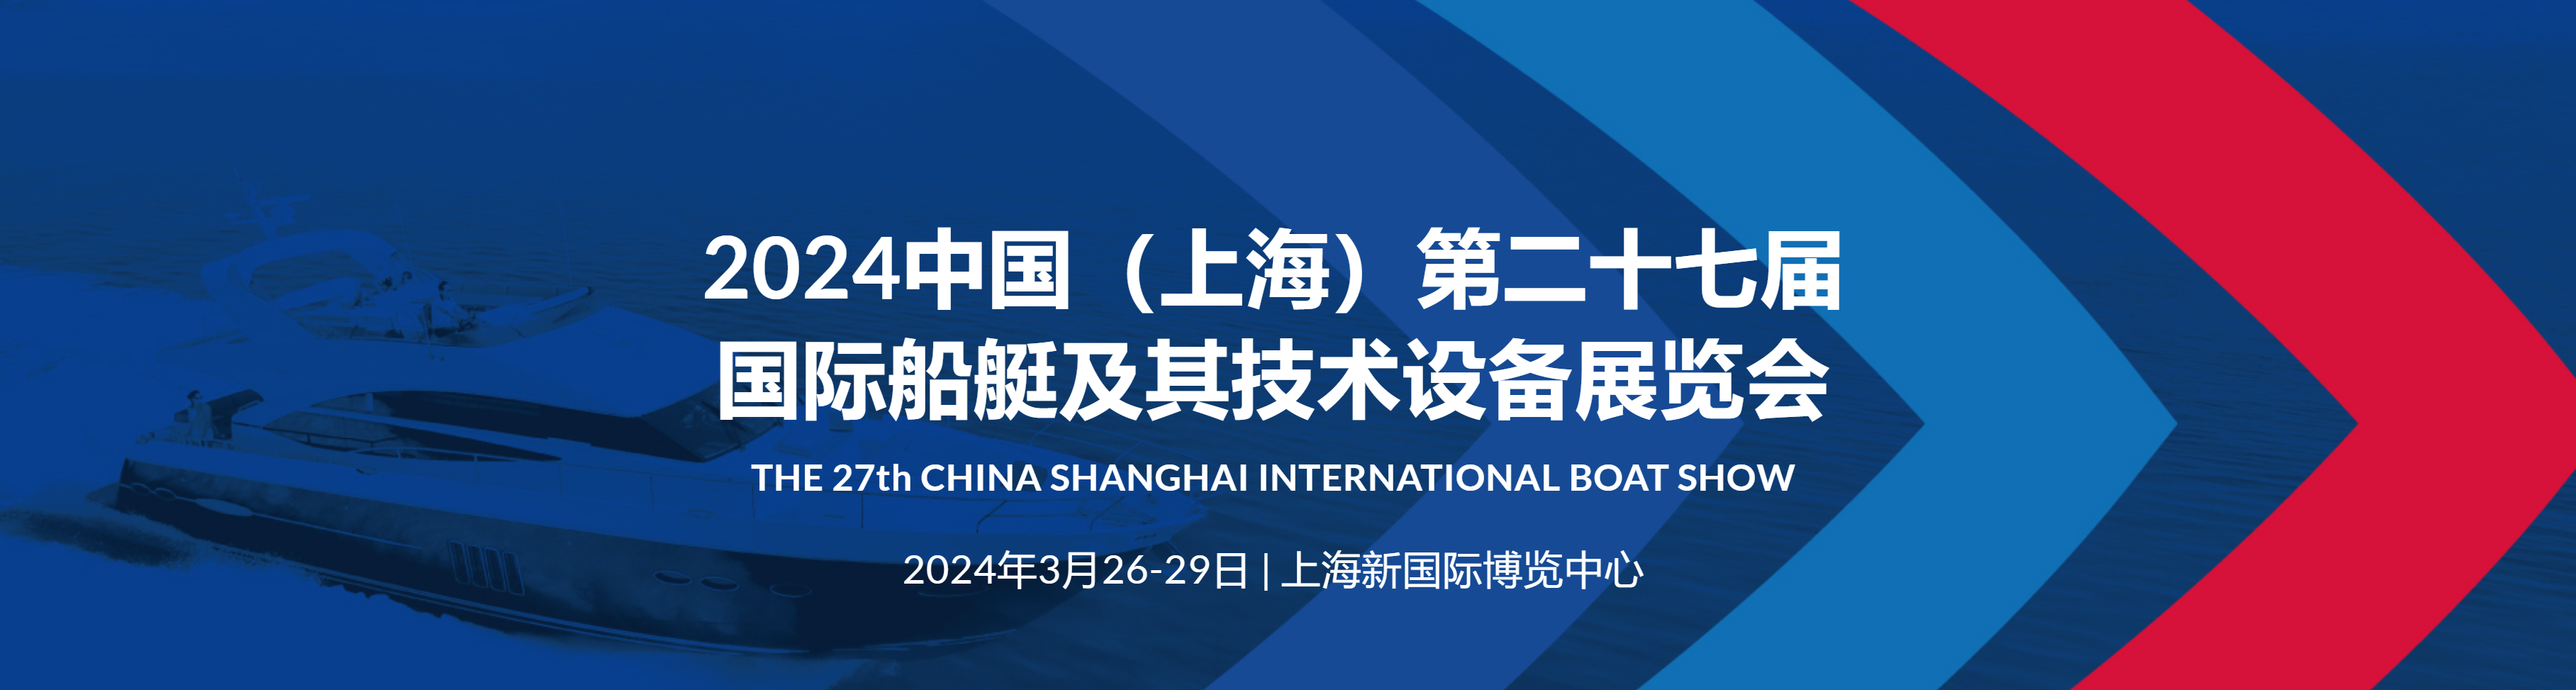 第27屆CIBS中國國際遊艇展暨中國國際船艇及其技術設備展覽會